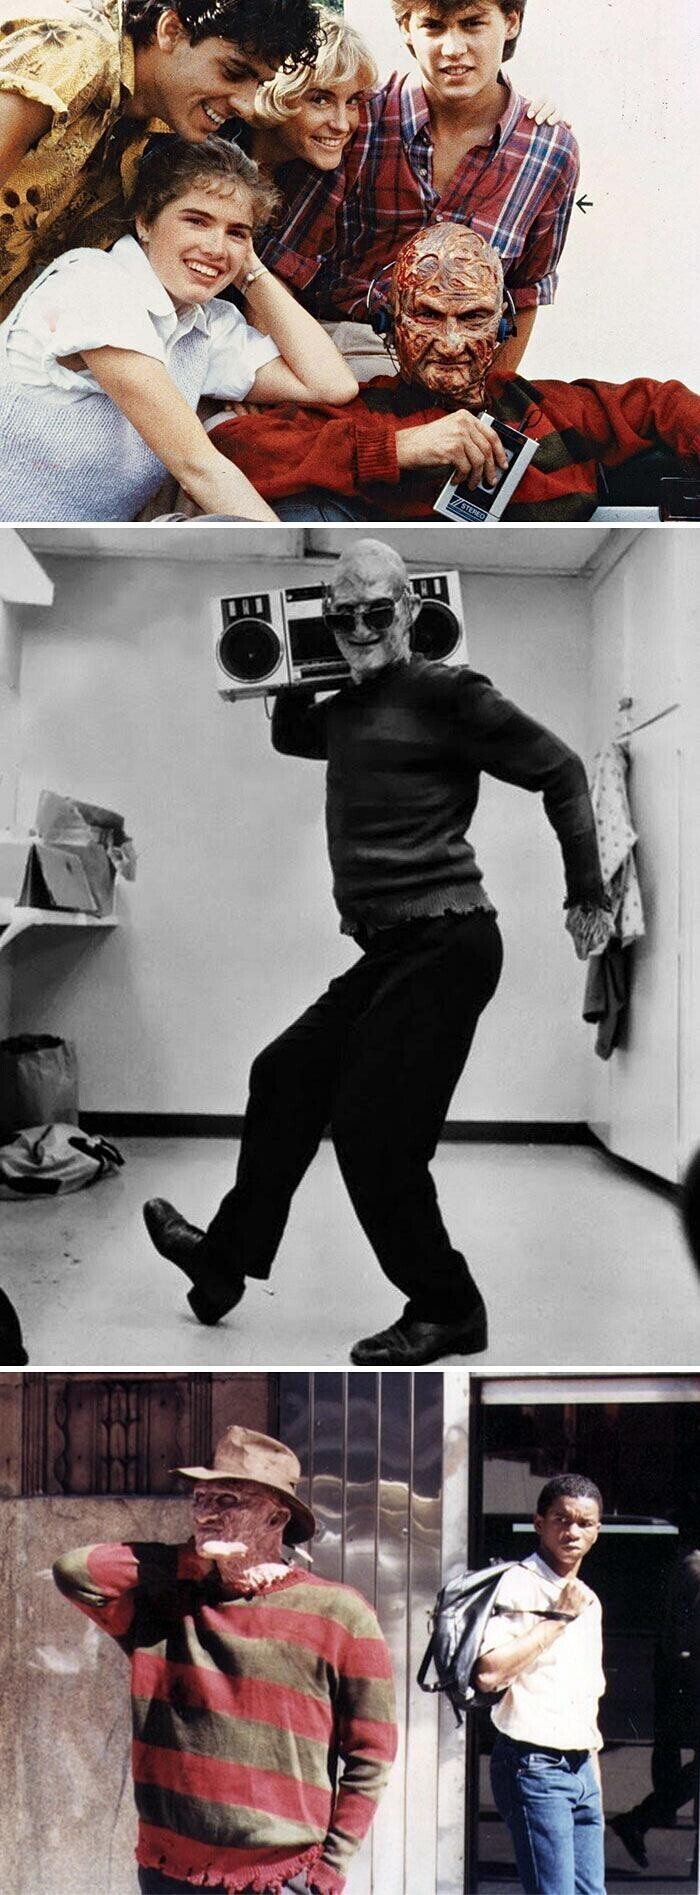 Роберт Инглунд в роли Фредди Крюгера, молодой Джонни Депп и другие актёры фильма "Кошмар на улице Вязов" 1984 год